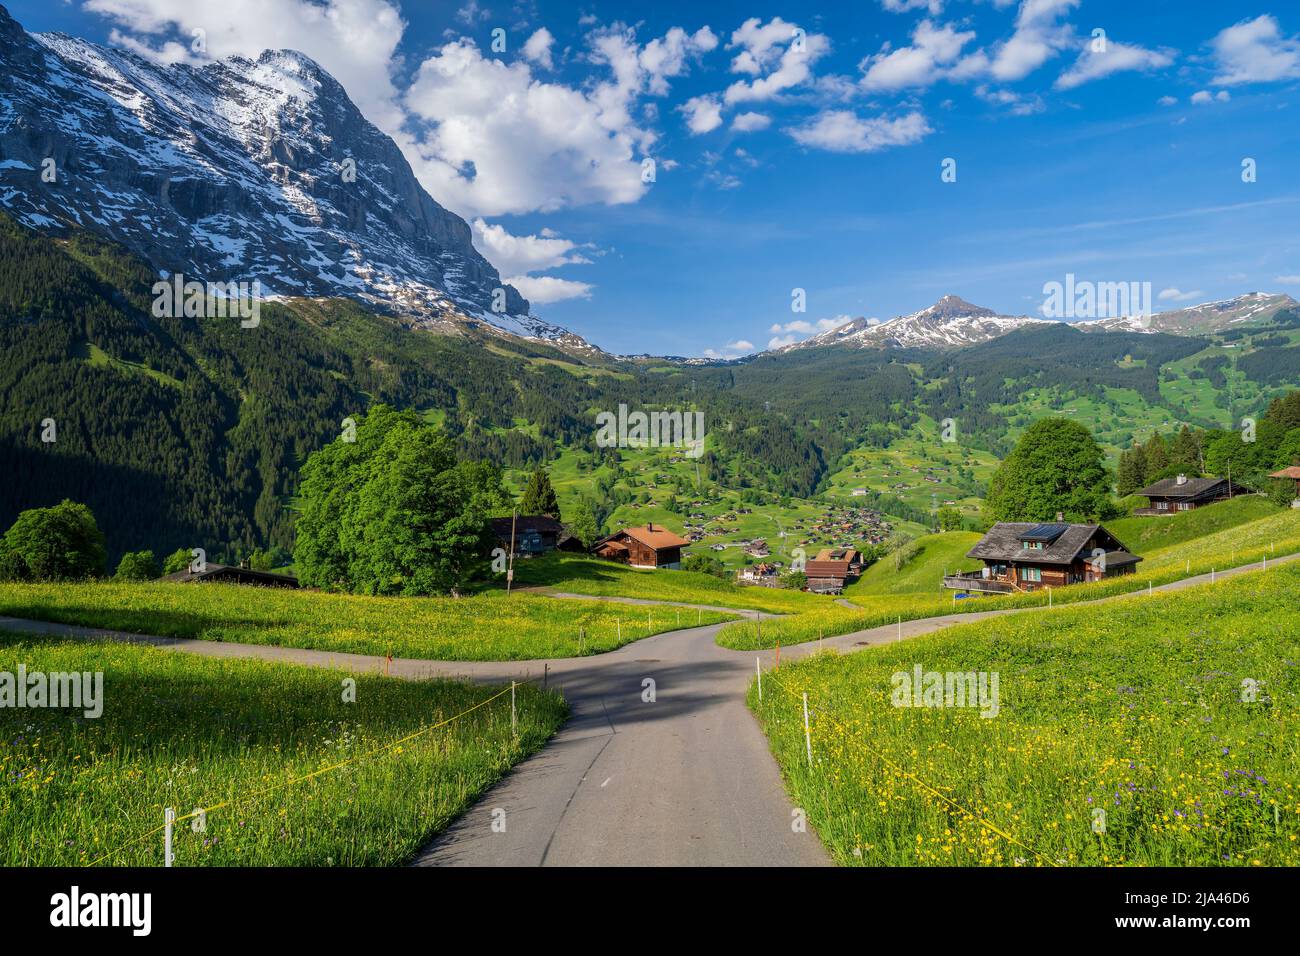 Paysage pittoresque de montagne d'été, Grindelwald, canton de Berne, Suisse Banque D'Images